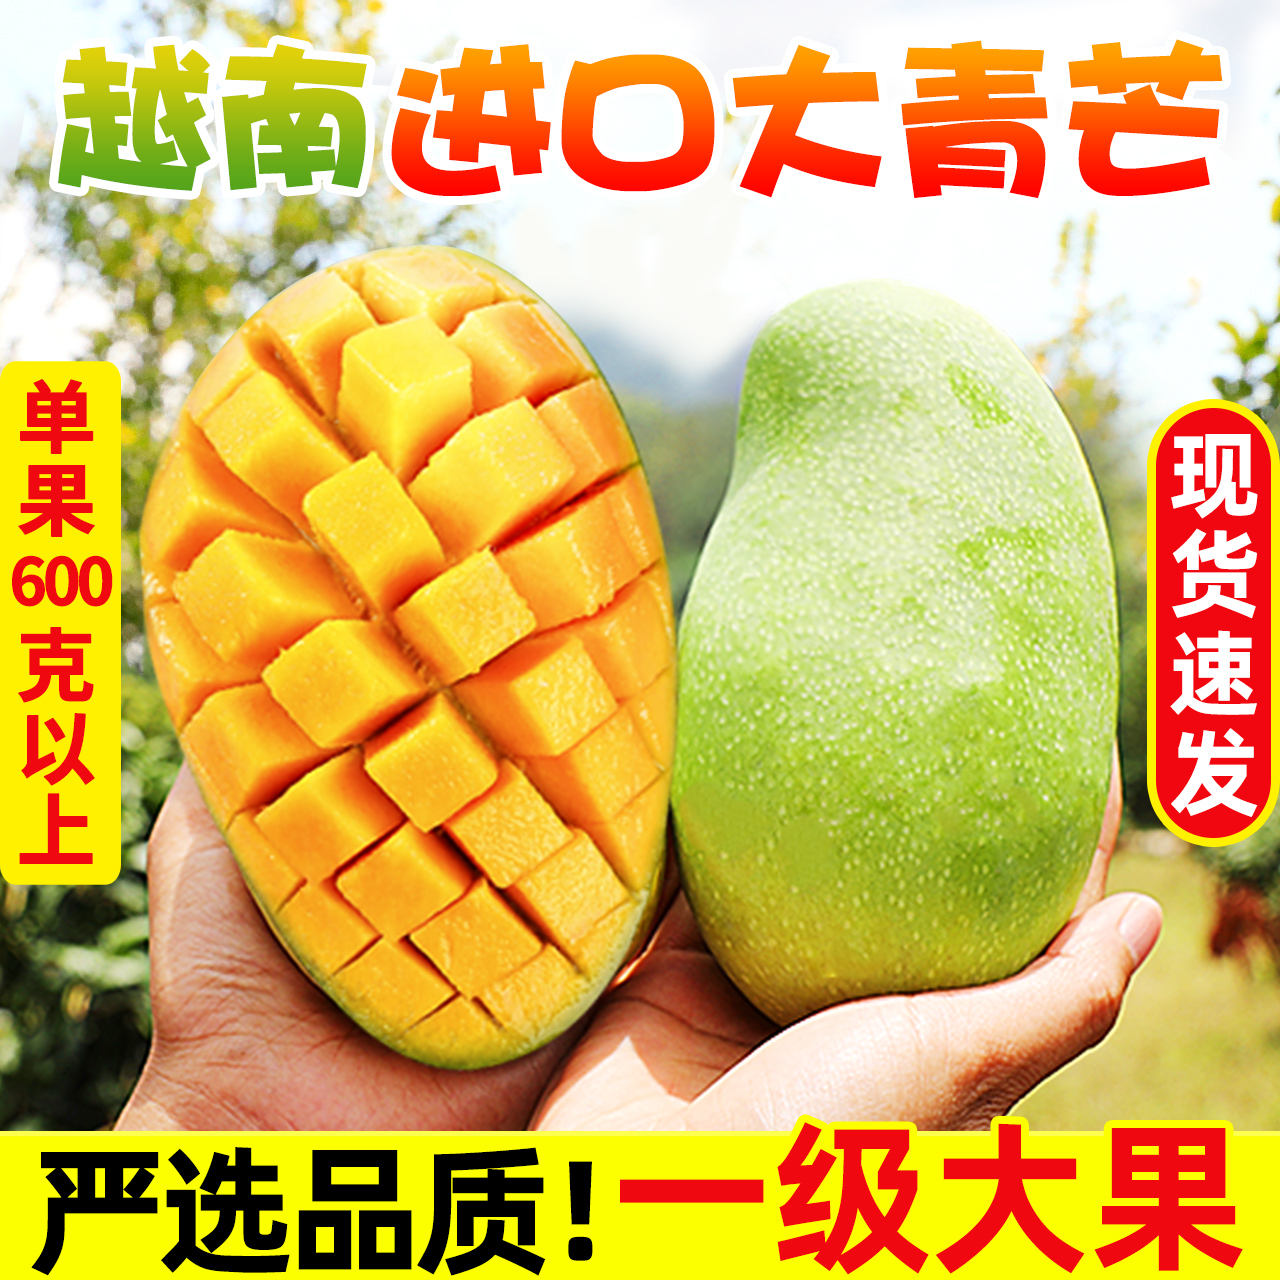 越南进口大青芒10斤新鲜大芒果装热带青皮水果当季特产整箱包邮5